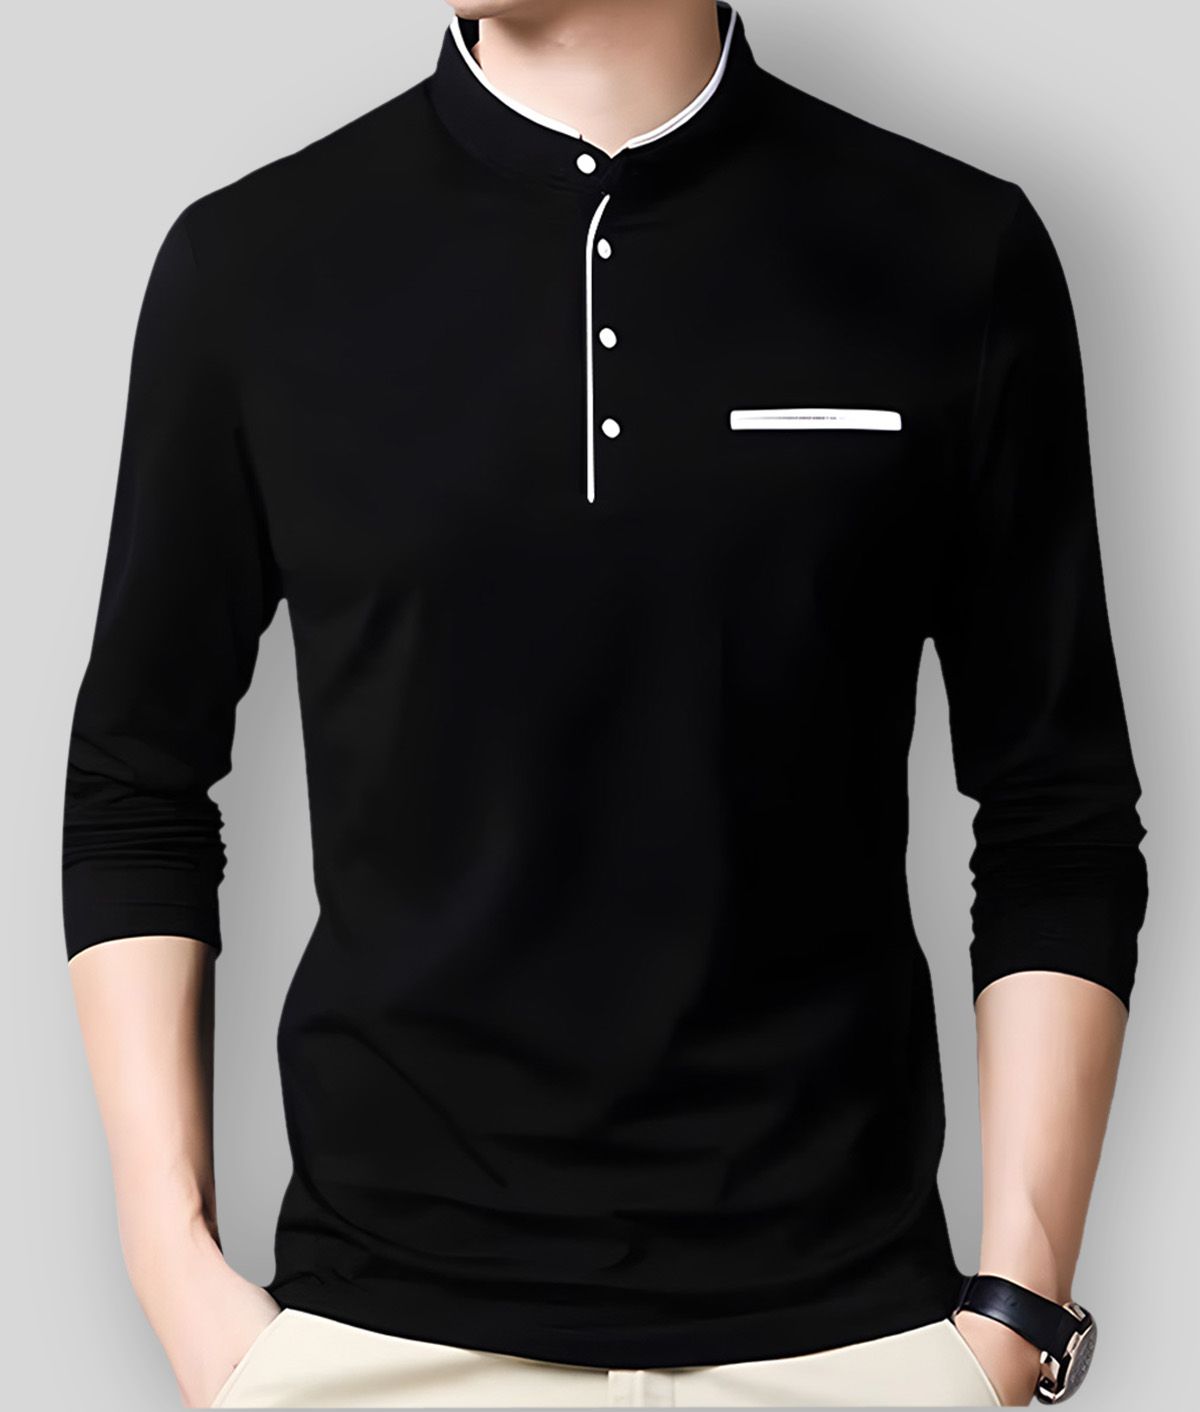     			GESPO T-Shirt Cotton Blend Solid Regular Fit For Men - Black ( Pack of 1 )